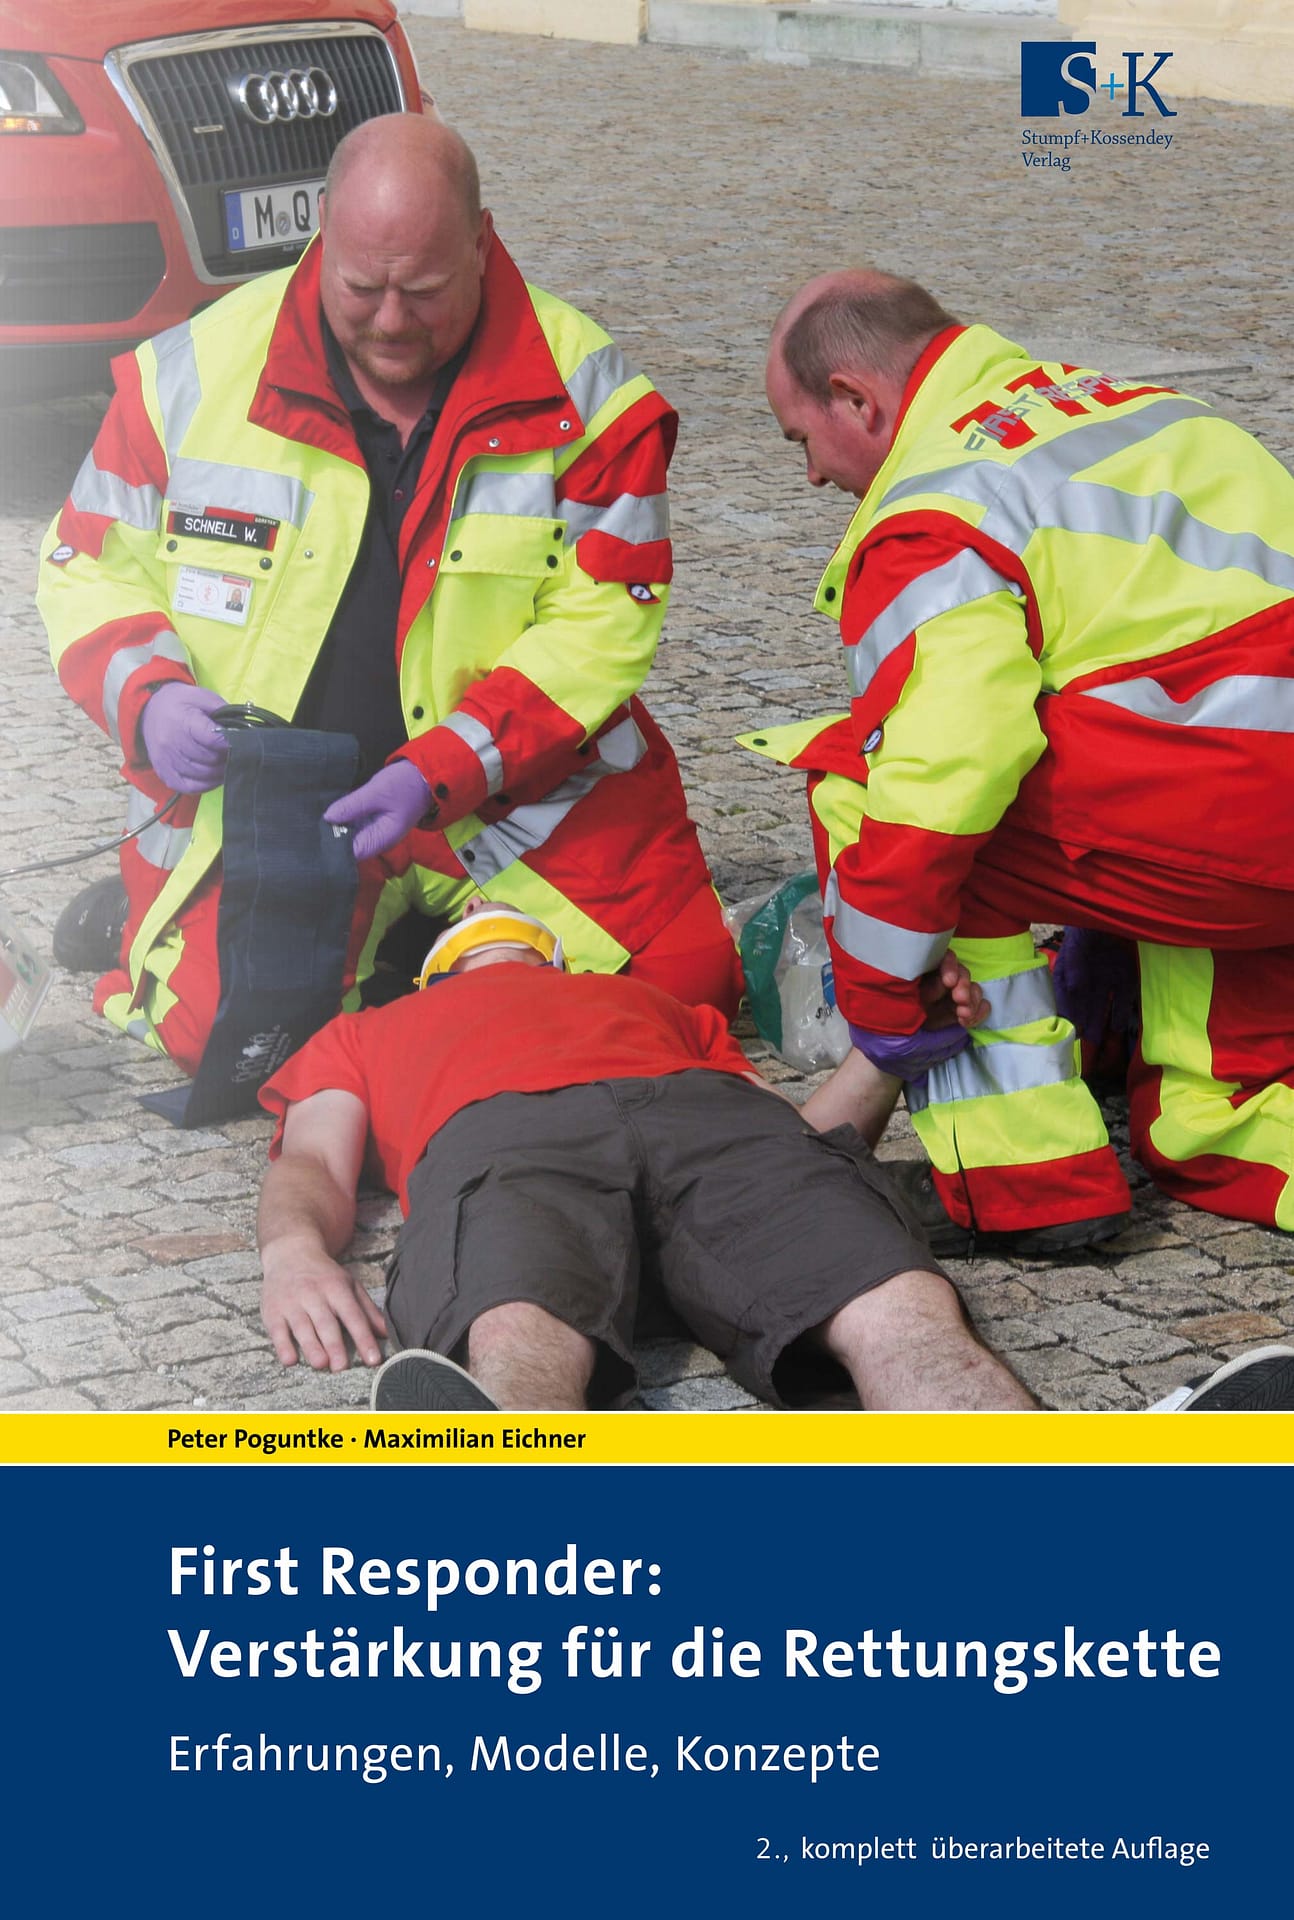 First Responder: Verstärkung für die Rettungskette – Erfahrungen